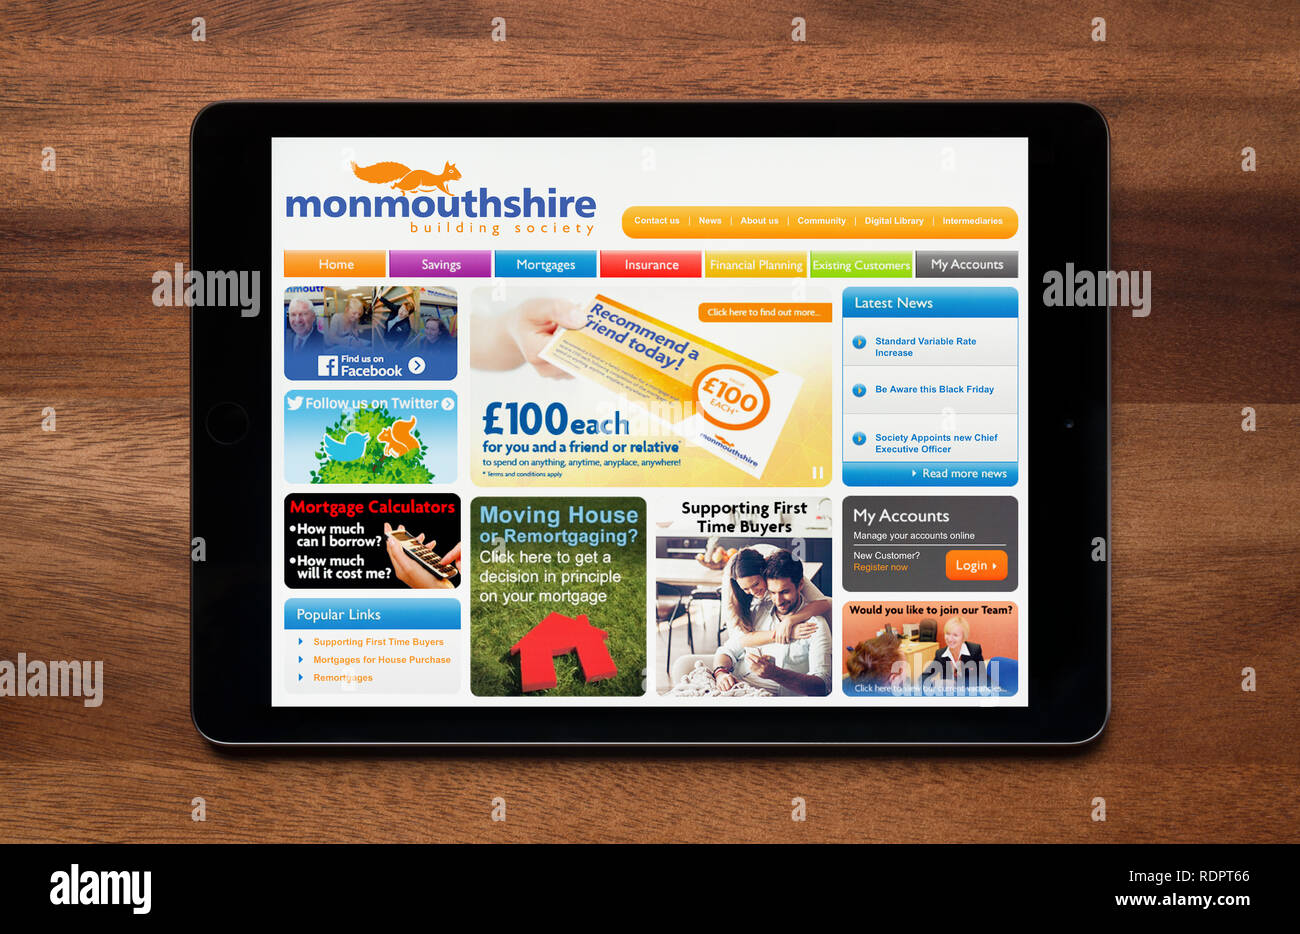 Il sito web di Monmouthshire Building Society è visto su un tablet iPad, il quale è appoggiato su un tavolo di legno (solo uso editoriale). Foto Stock